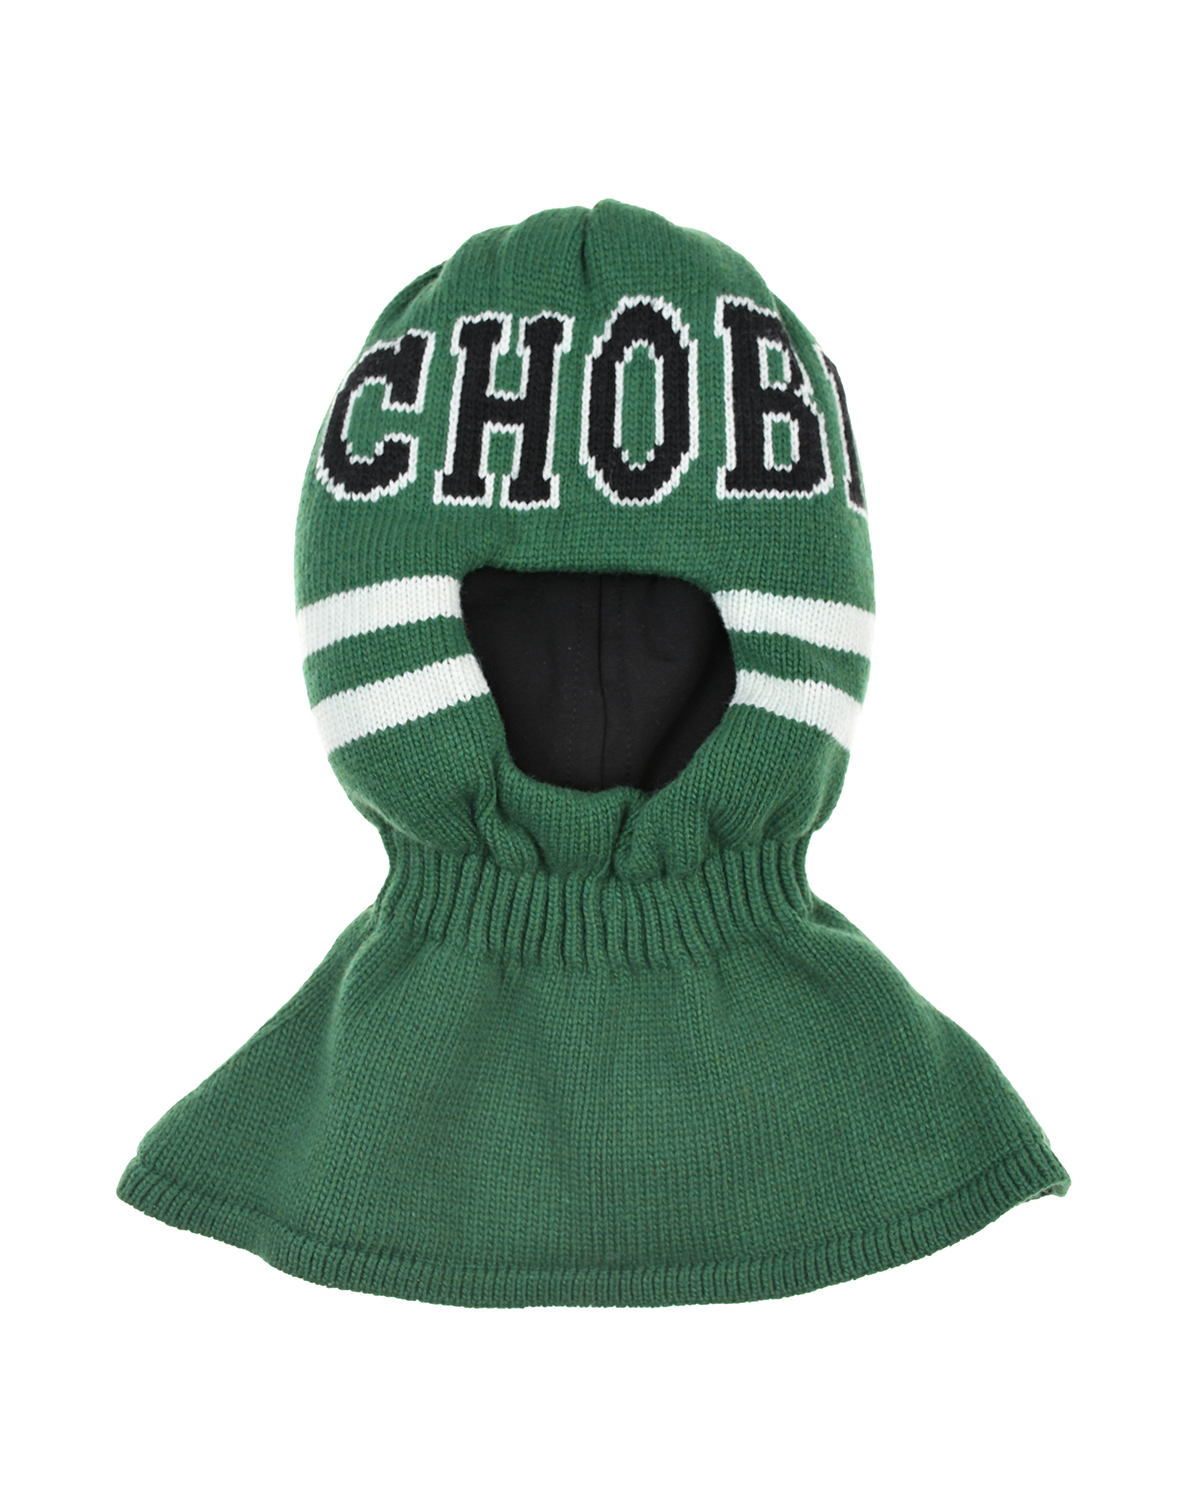 Зеленая шапка-шлем с белыми полосами Chobi детская, размер 53, цвет зеленый - фото 1